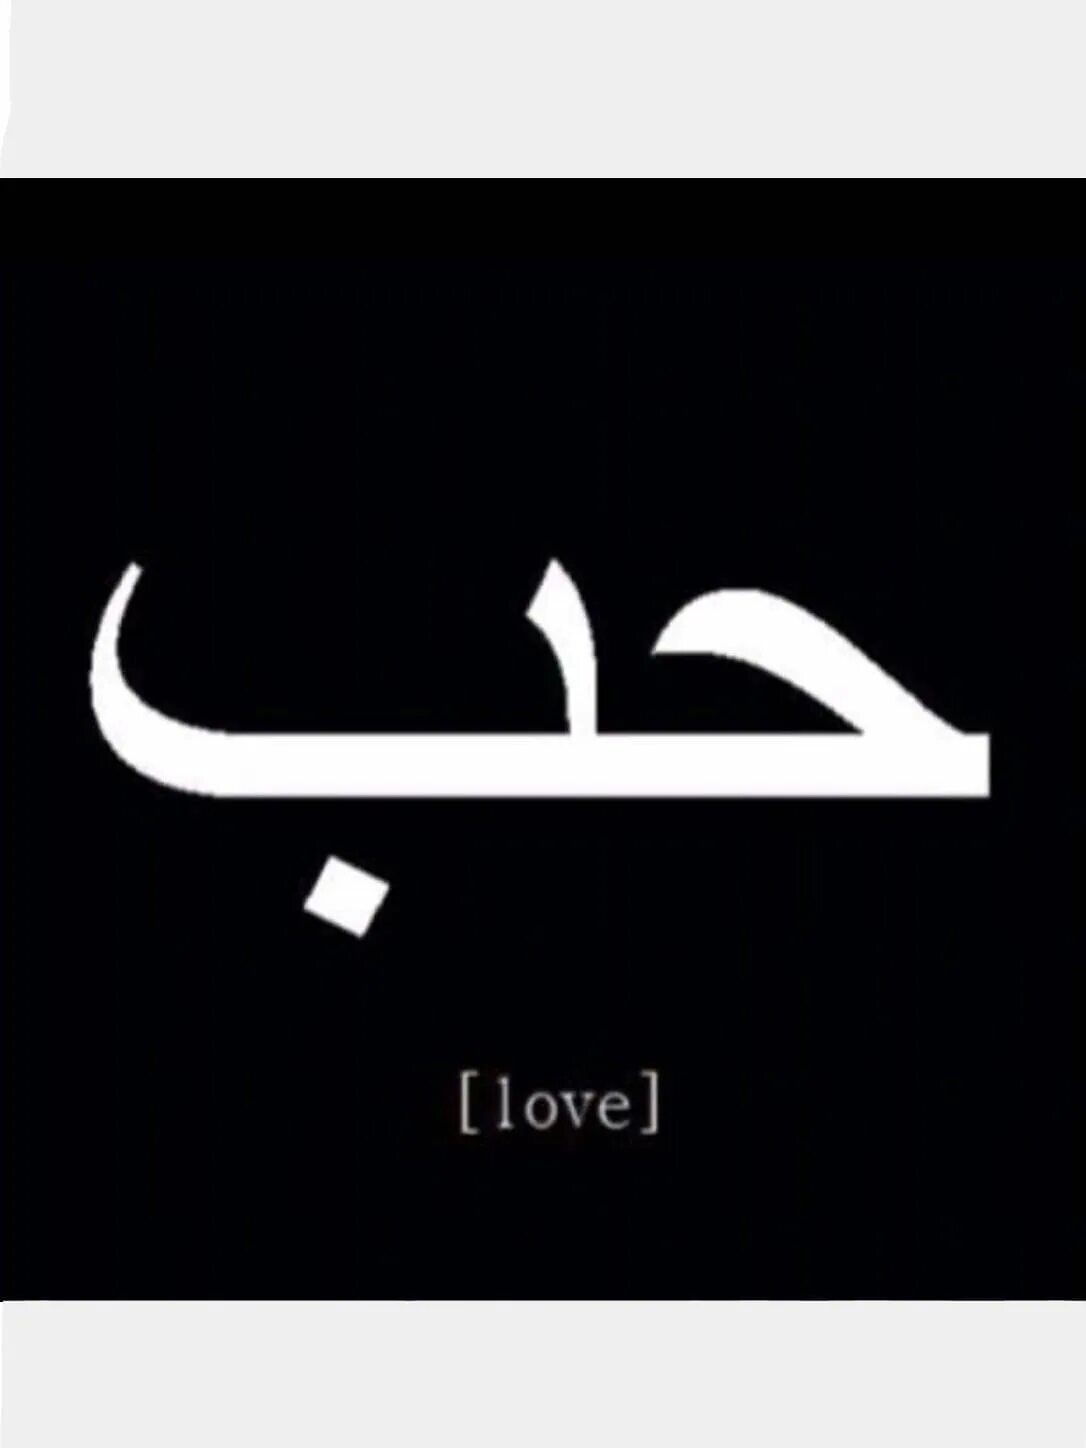 Любовь на арабском. Арабские надписи. Слово любовь на арабском. Love на арабском.